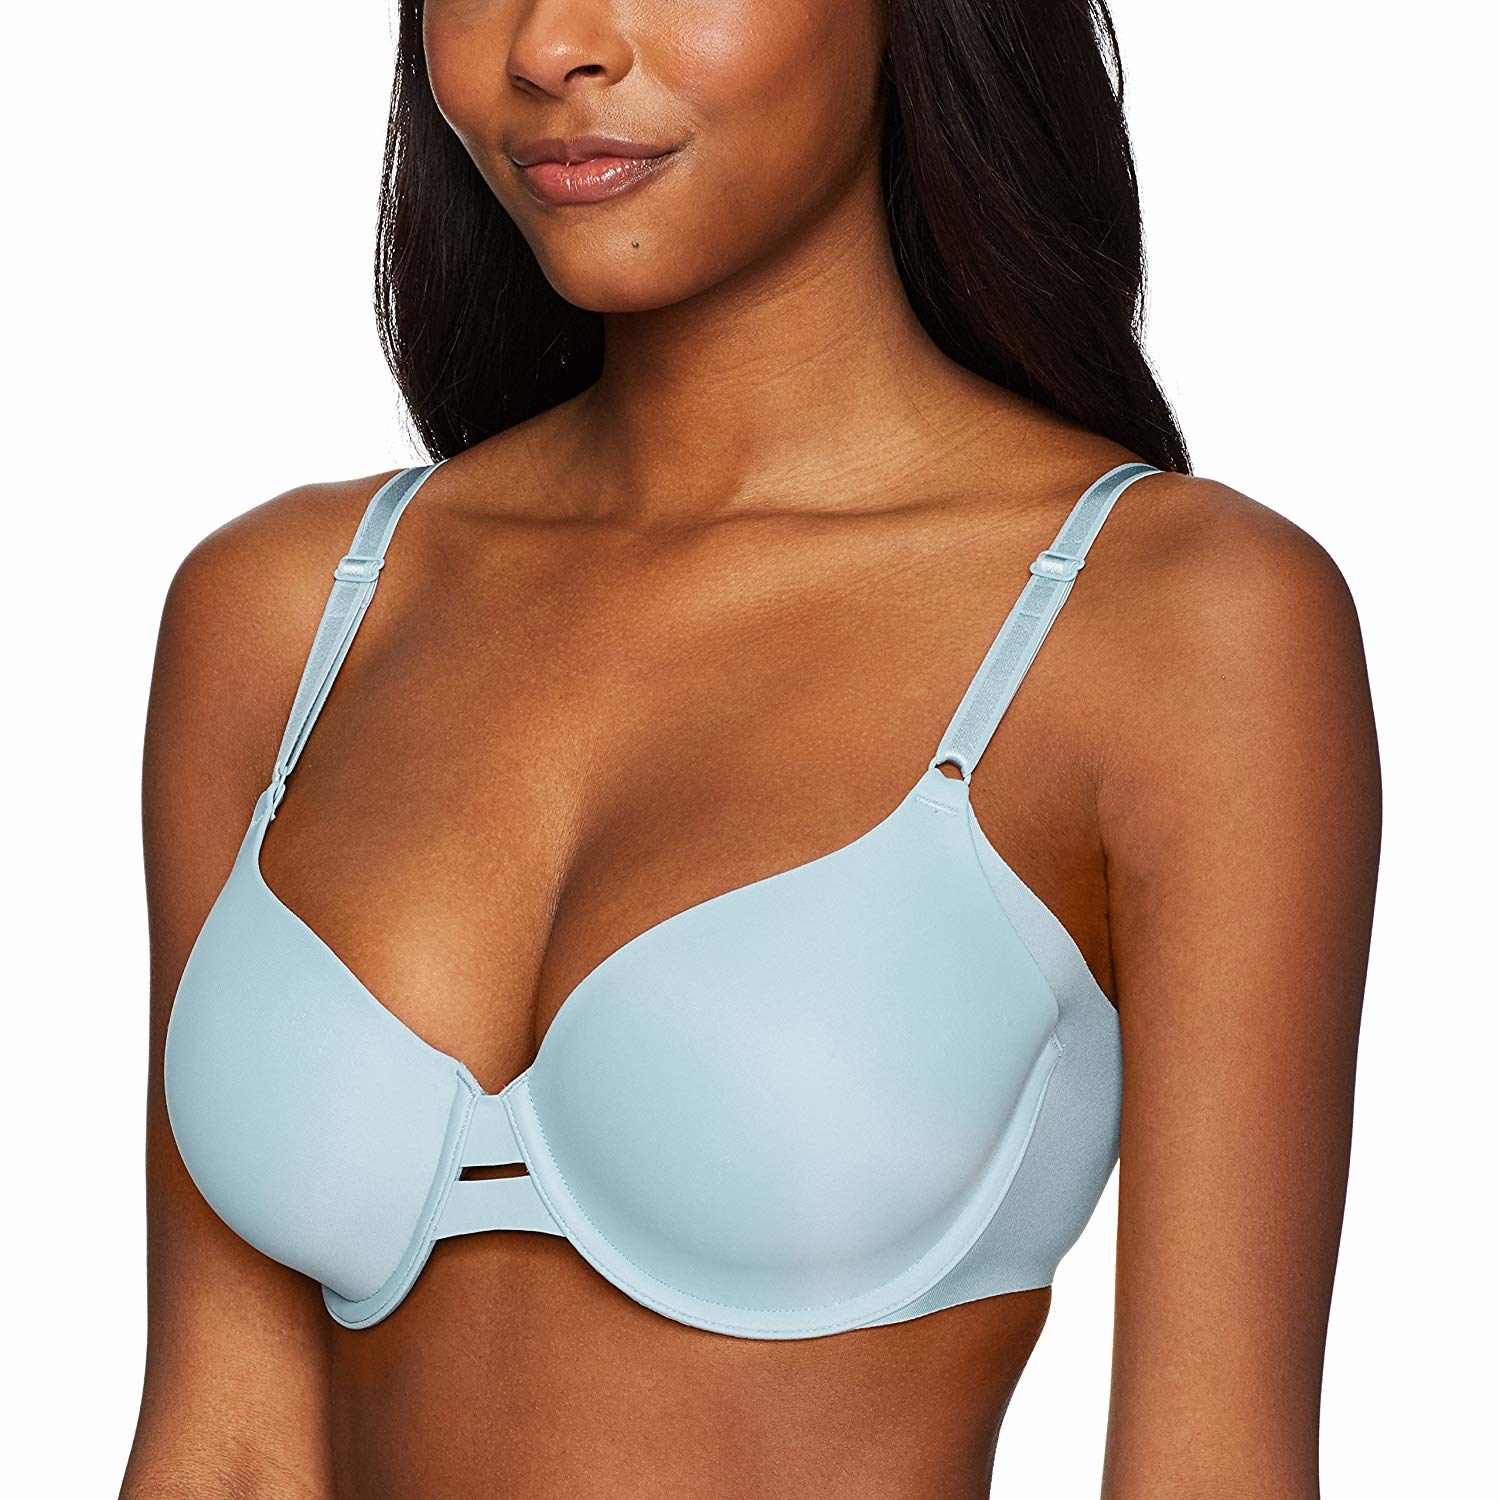 Model wearing light blue bra